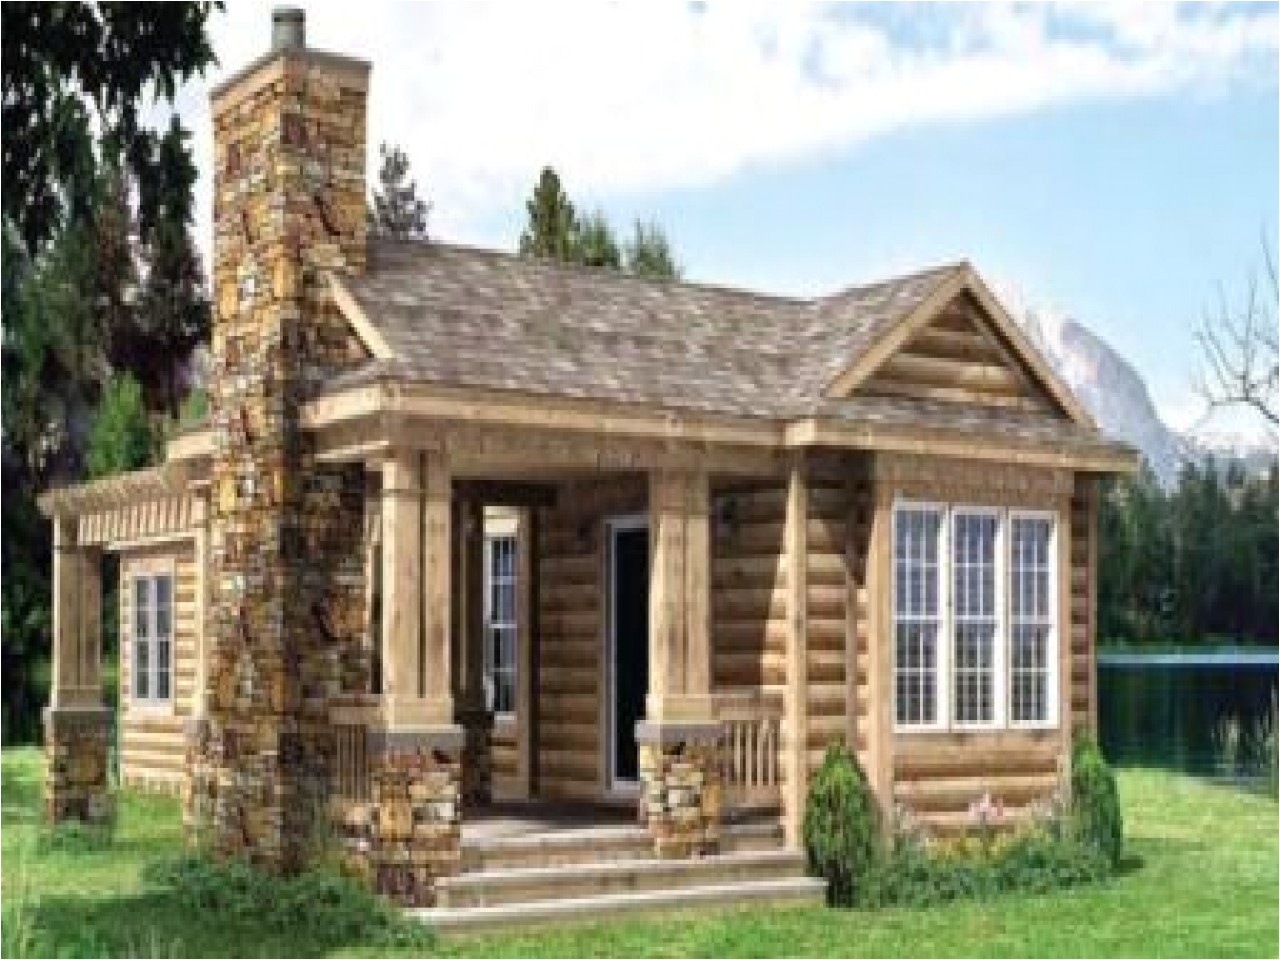 Small Log Cabin Home Plans Design Small Cabin Homes Plans Best Small Log Cabin Plans